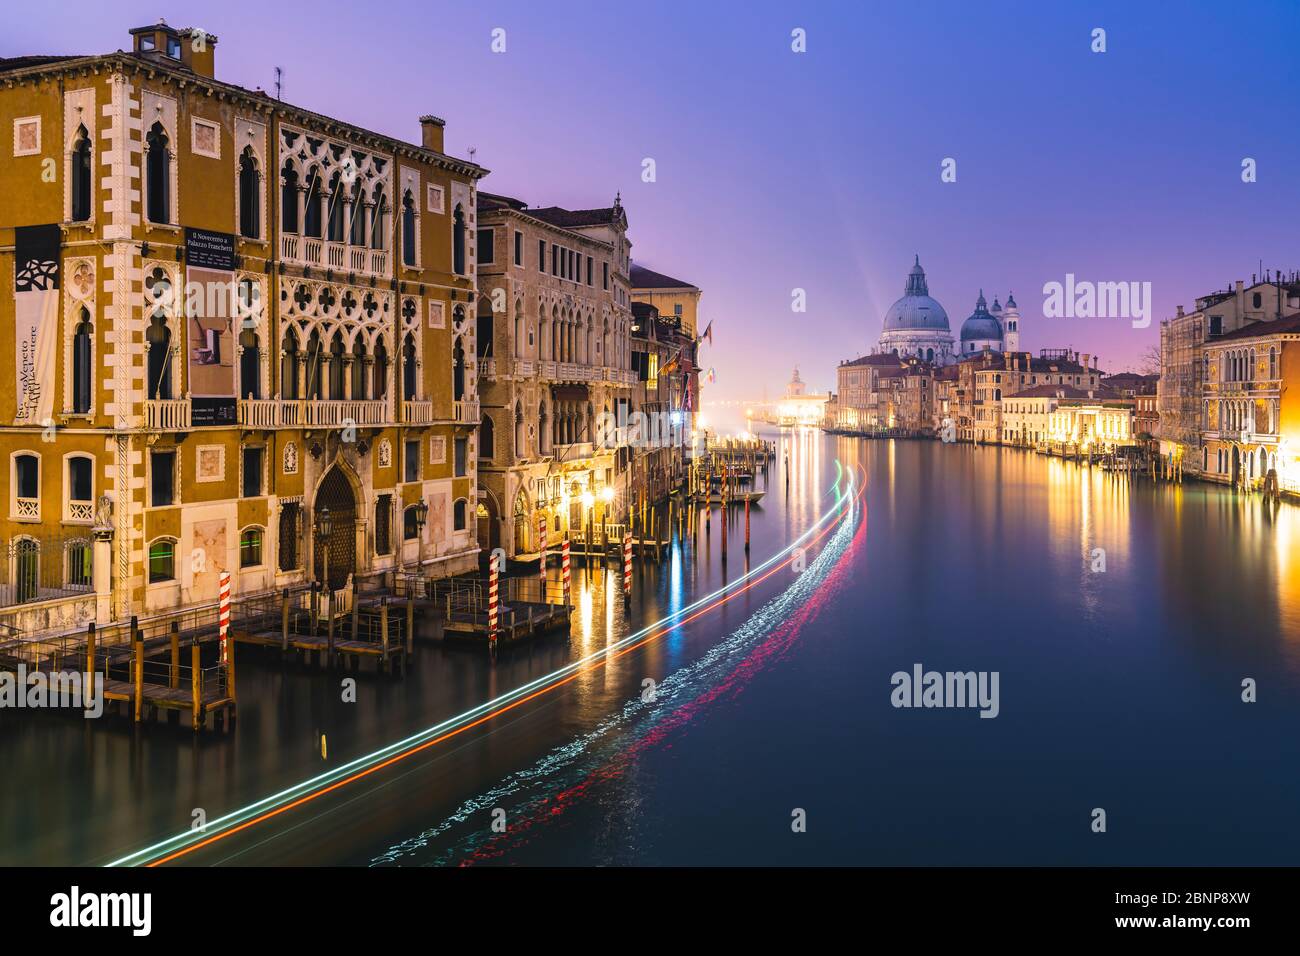 Grand Canal at night, Palazzo Cavalli-Franchetti, Santa Maria della Salute, Venice, historic center, Veneto, Italy, northern Italy, Rialto, Europe Stock Photo